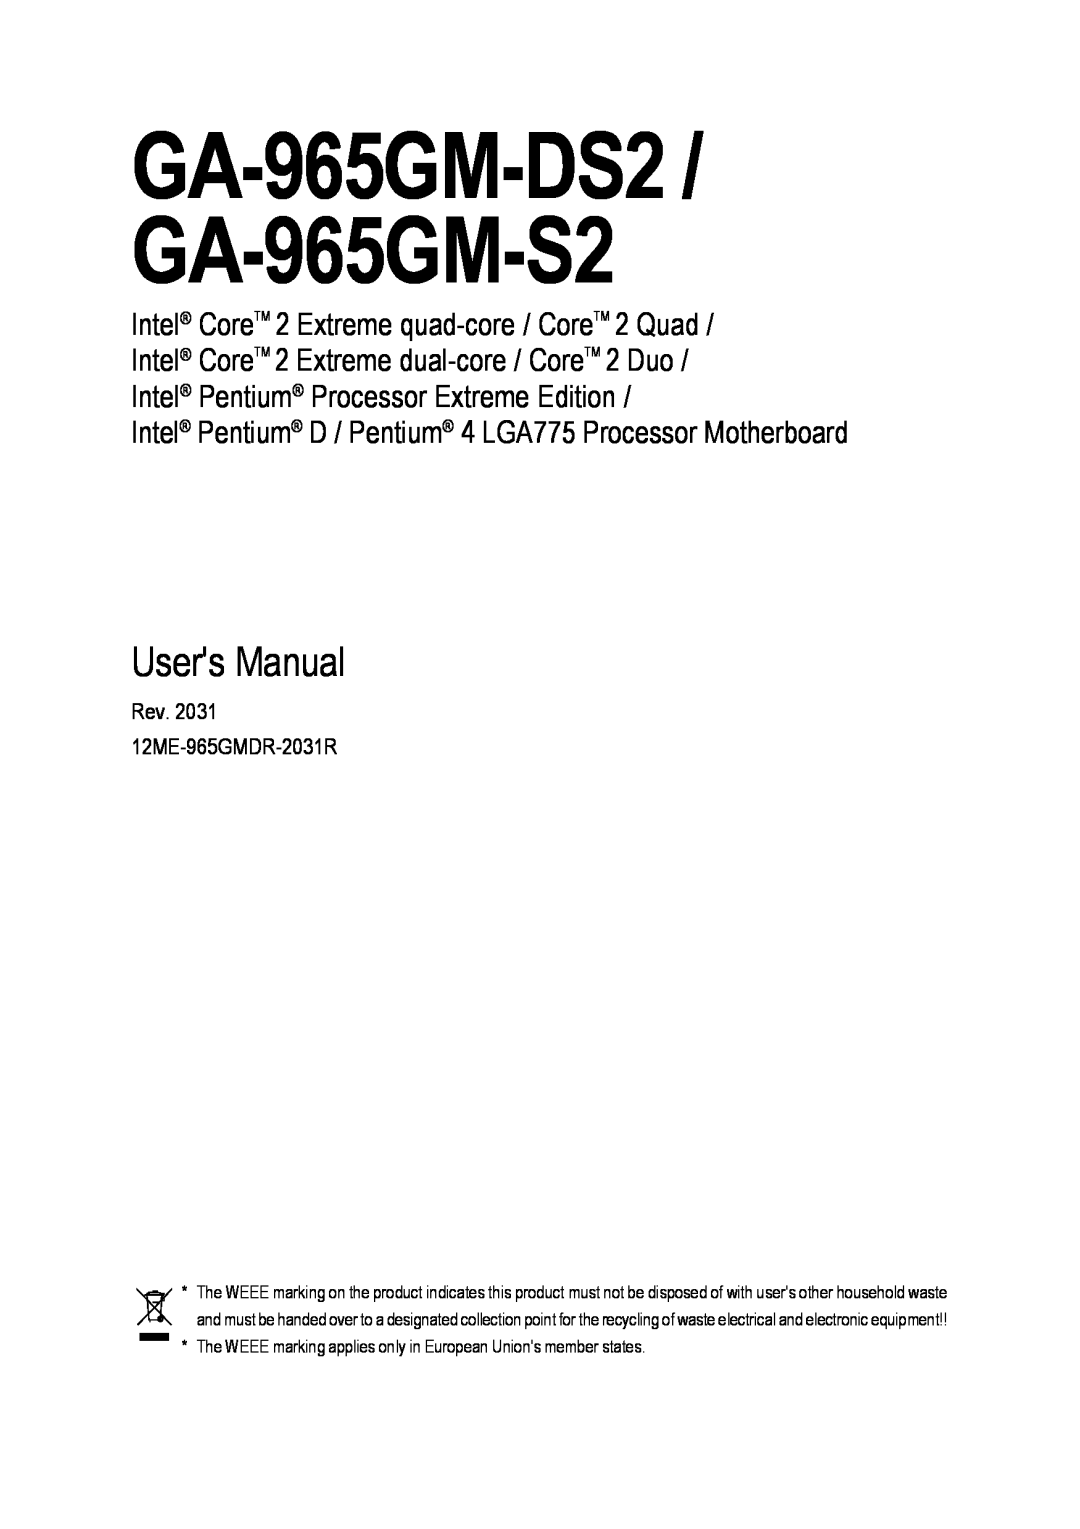 Gigabyte user manual GA-965GM-DS2 / GA-965GM-S2, Users Manual, Intel Pentium D / Pentium 4 LGA775 Processor Motherboard 